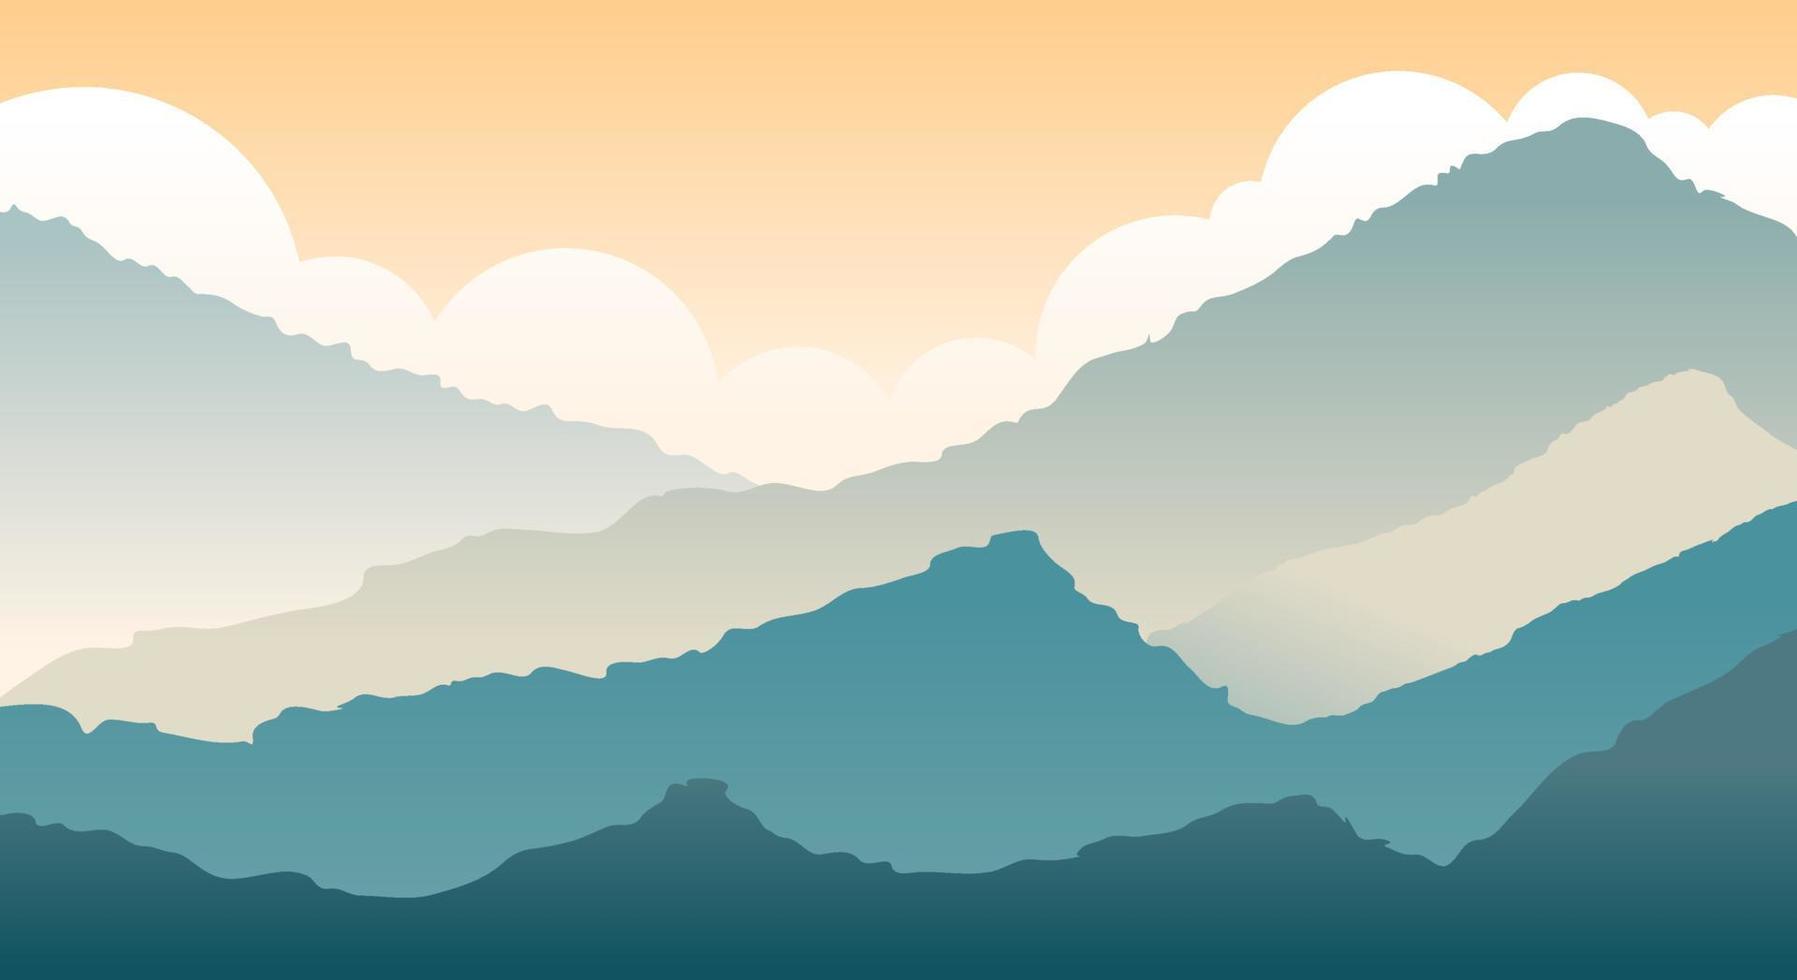 cenário natural com silhuetas de colinas, montanhas e céu com vetores e ilustrações de paisagem de nuvens